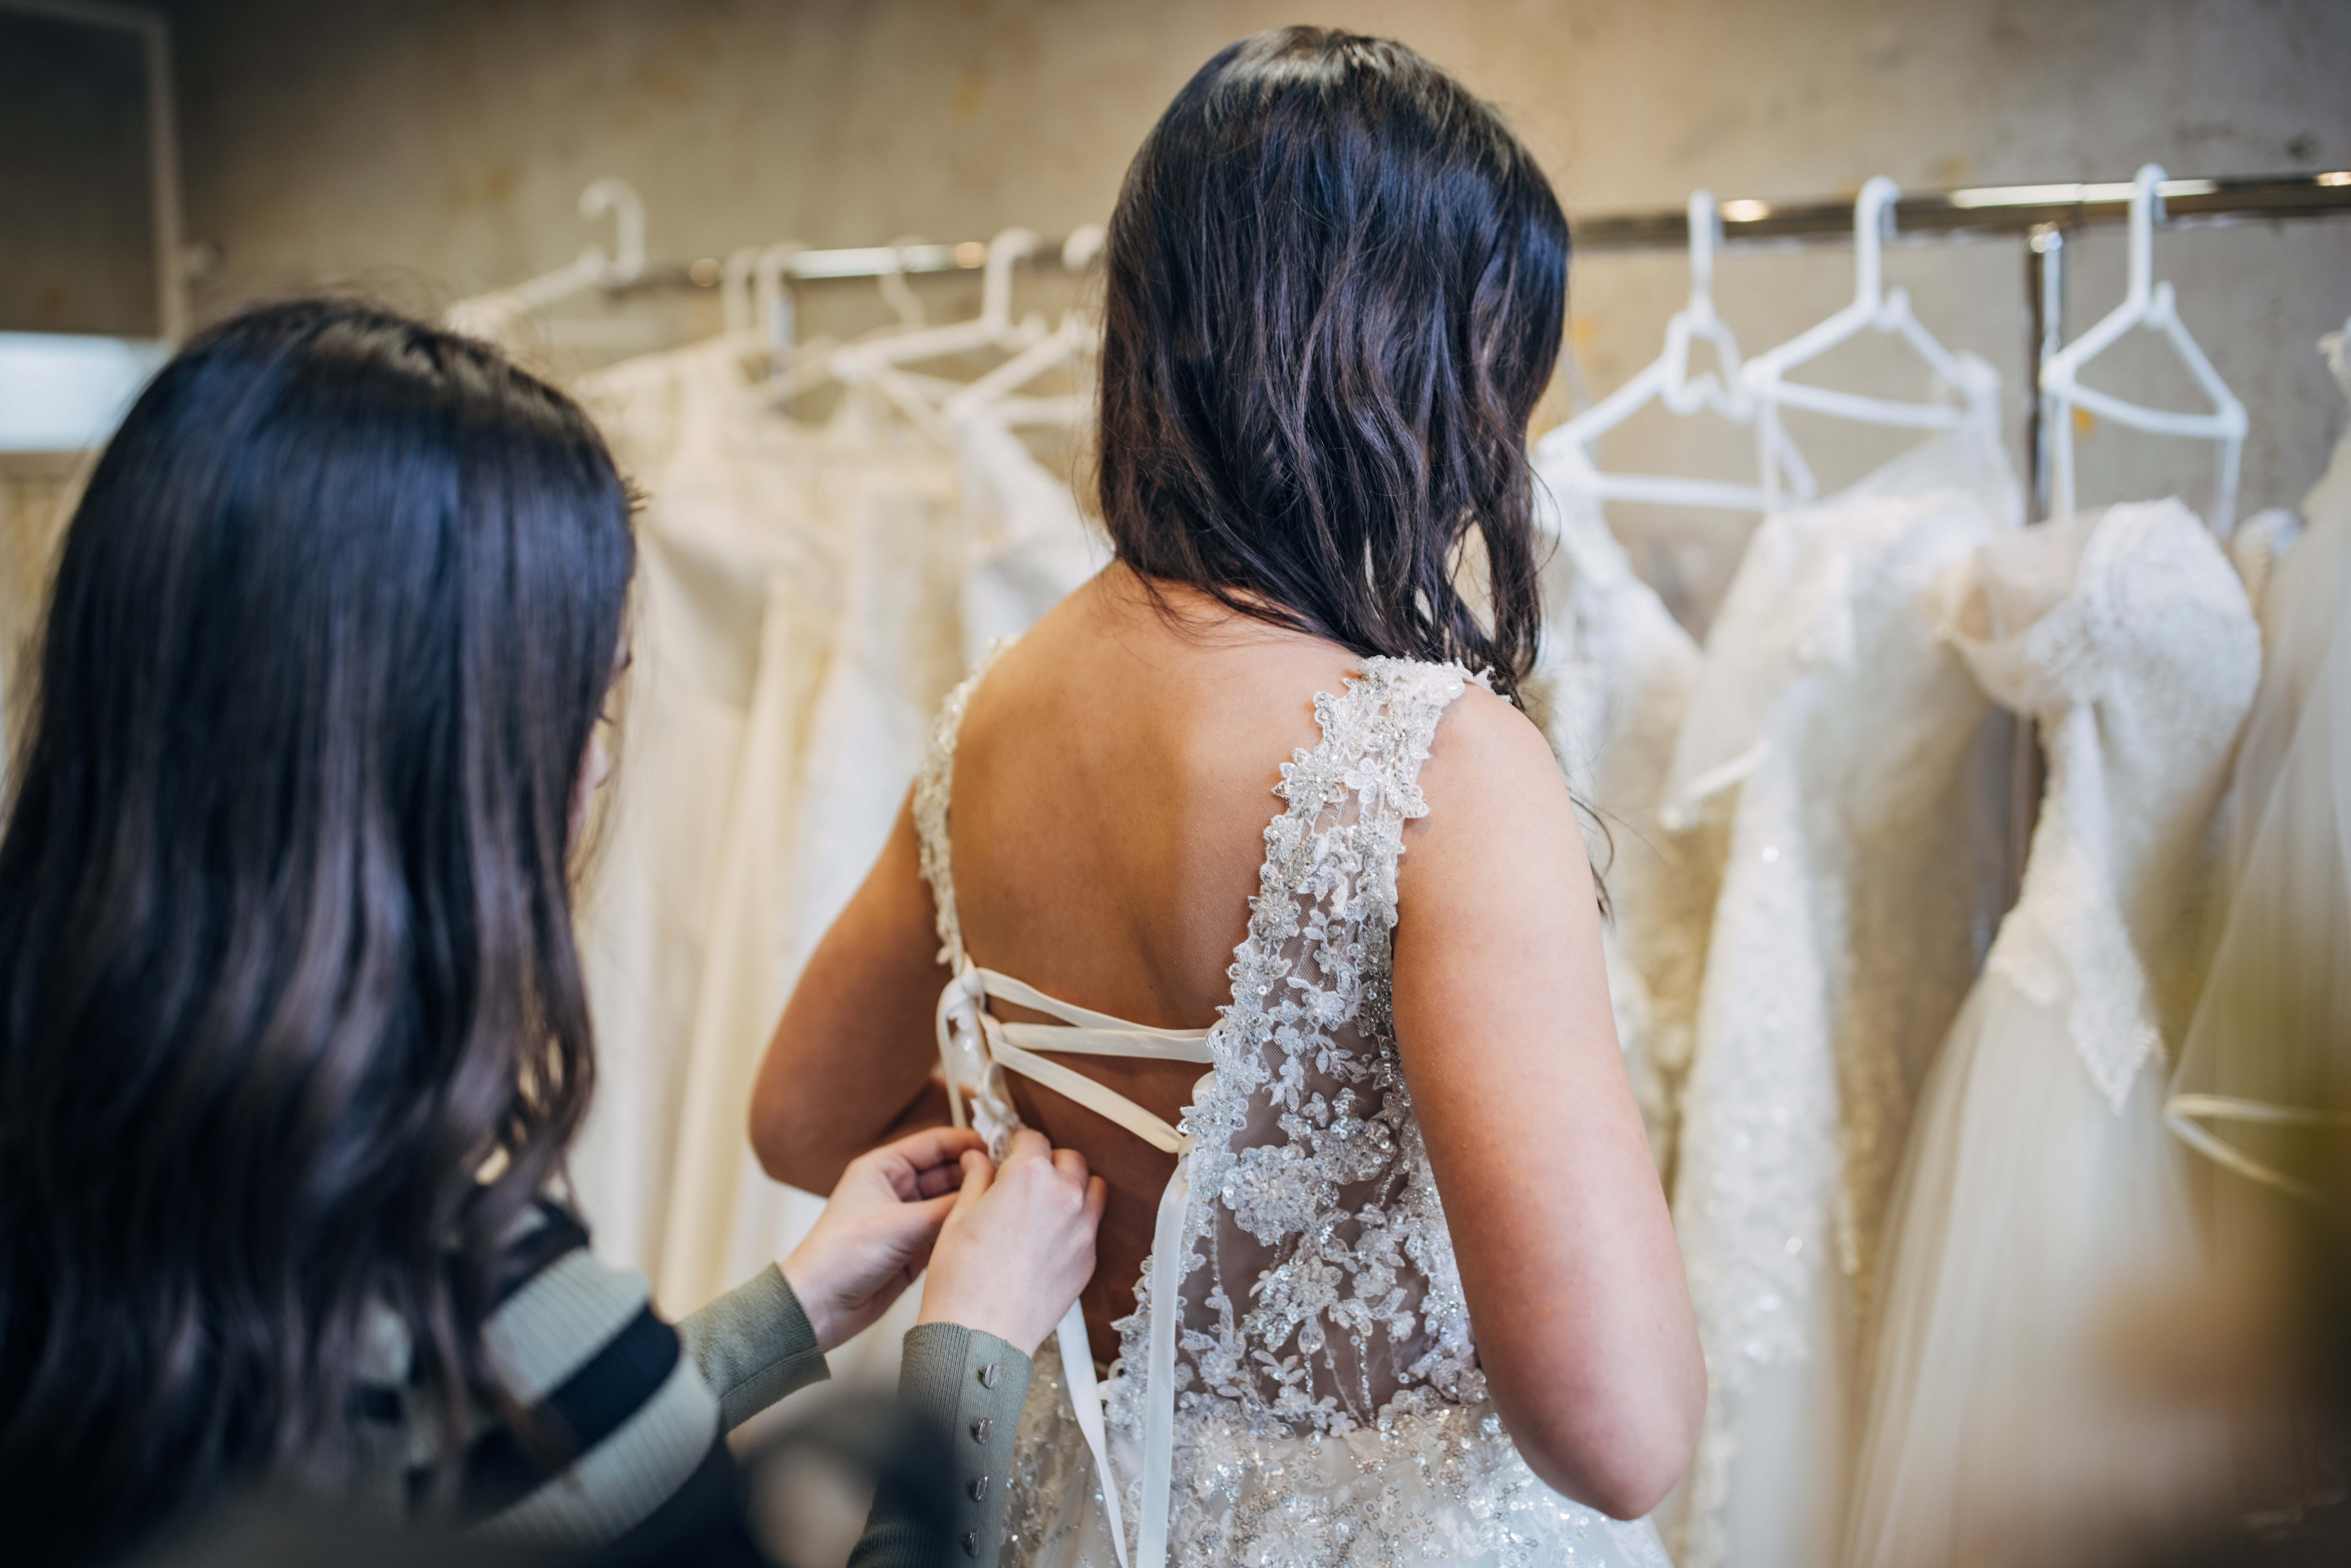 Une femme essayant une robe de mariée | Source : Getty Images